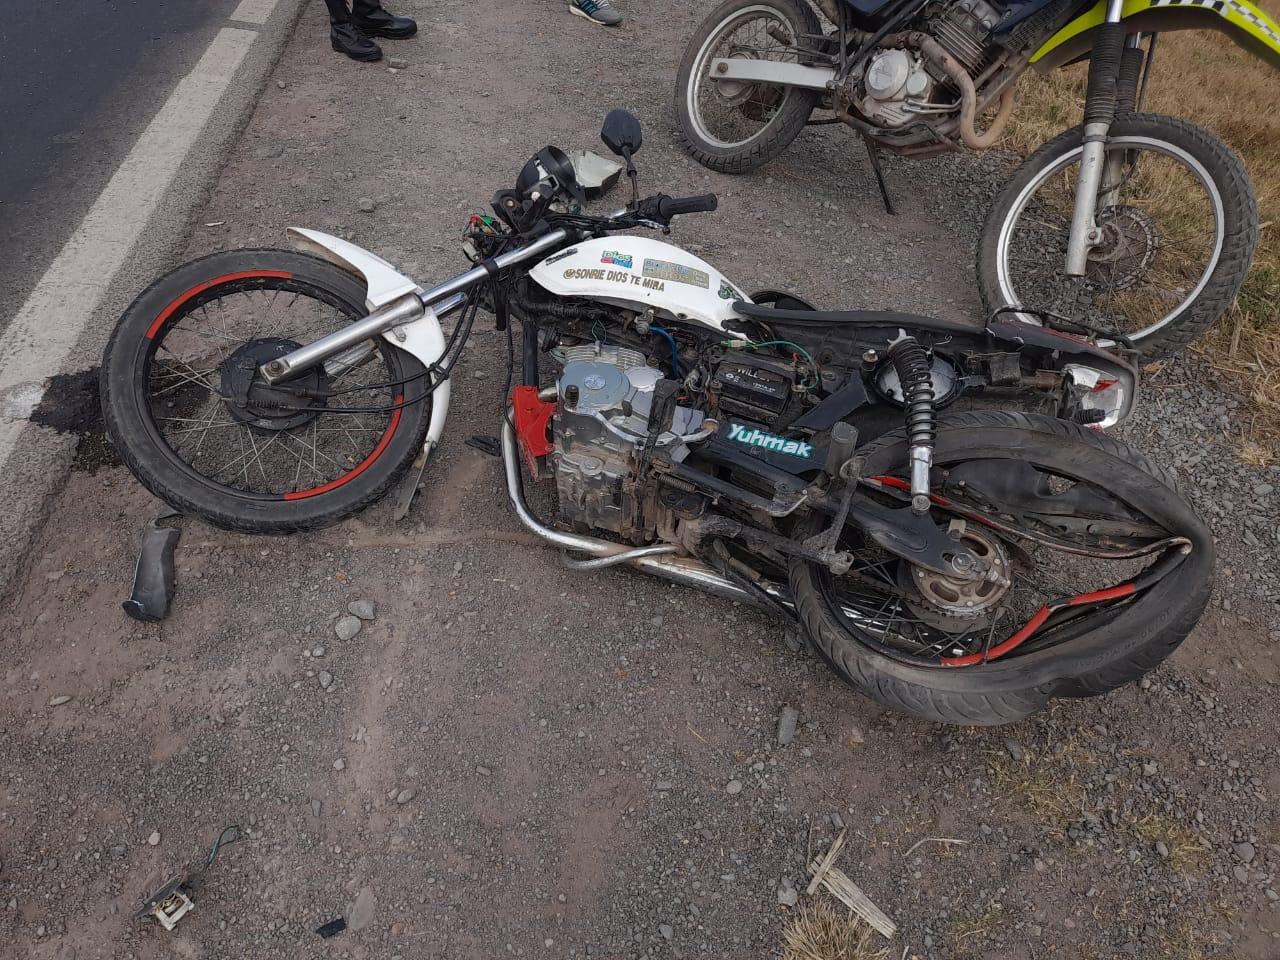 La motocicleta que chocó contra el vehículo del legislador Palina.